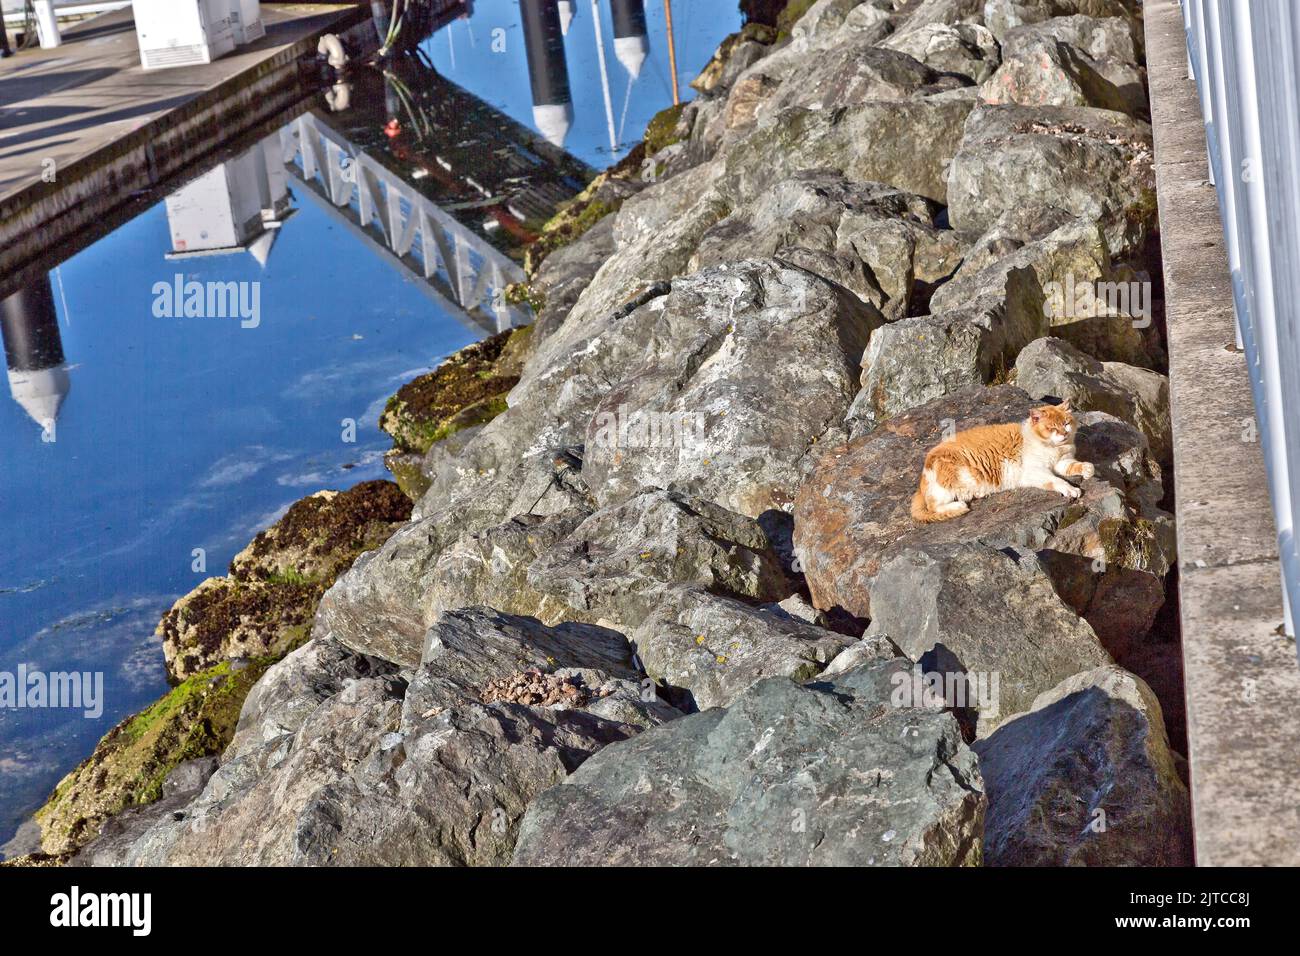 Senza casa, abbandonato, trascurato gatto 'Felis catus' (gatto di casa), riposante tra rocce di rinforzo, dopo l'alimentazione, attracco barche da pesca / porto. Foto Stock